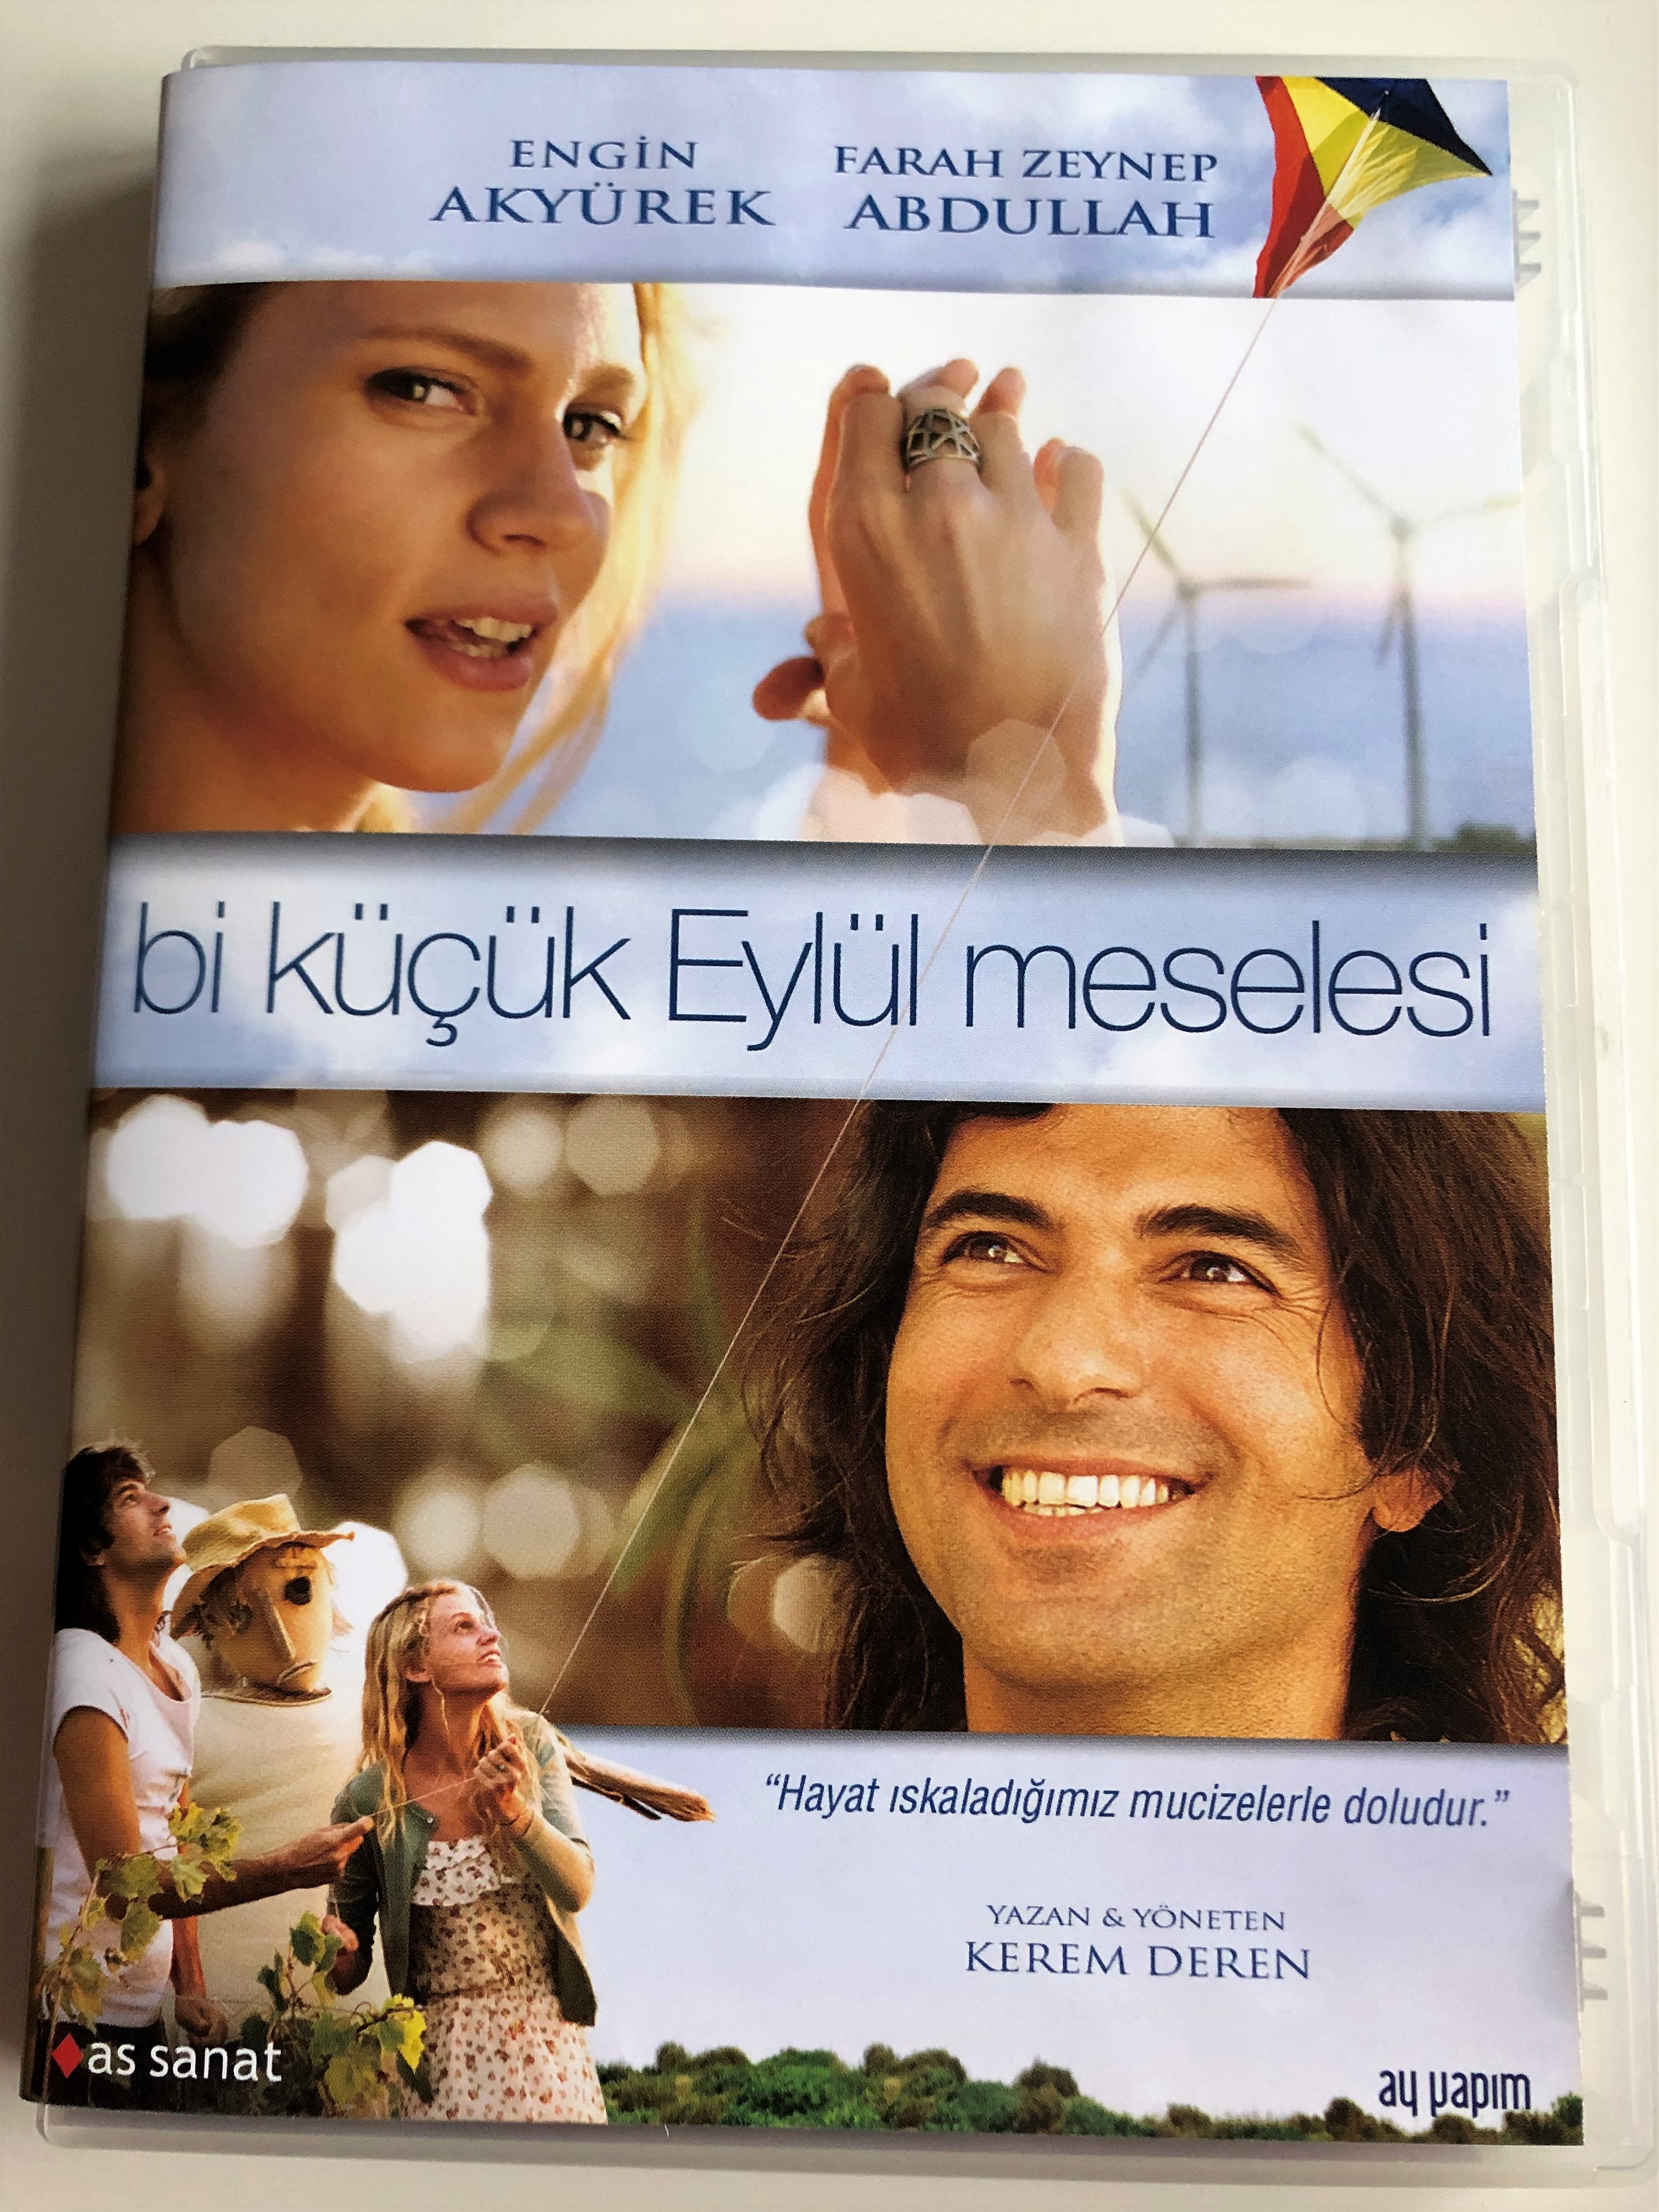 bi-k-k-eyl-l-meselesi-dvd-2014-a-small-september-affair-directed-by-kerem-deren-starring-engin-aky-rek-farah-zeynep-abdullah-1-.jpg